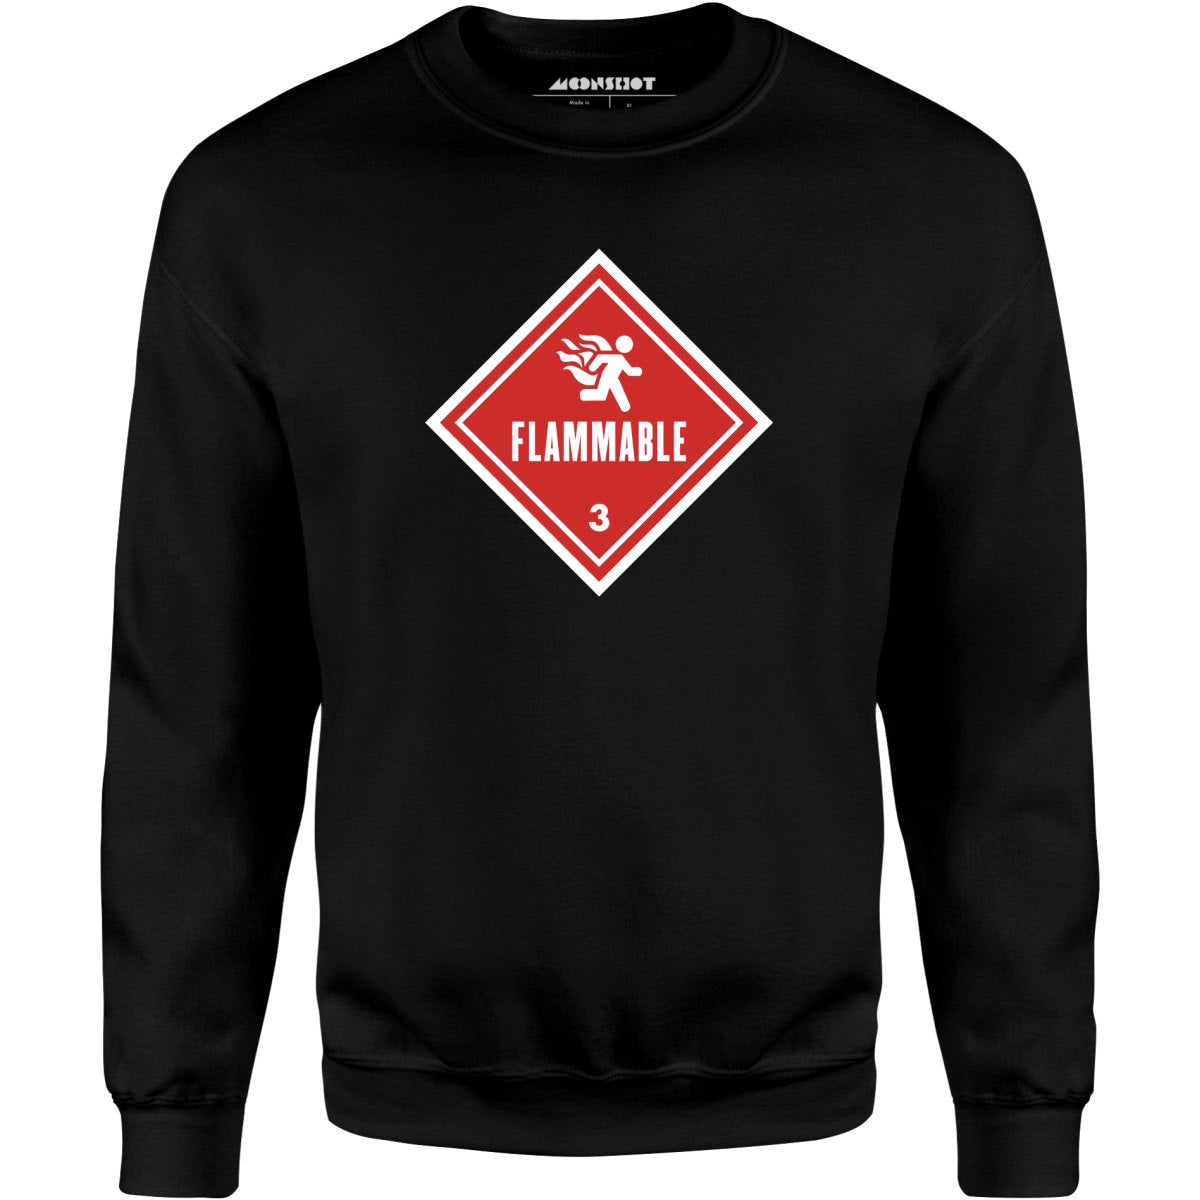 Flammable Human Warning - Unisex Sweatshirt